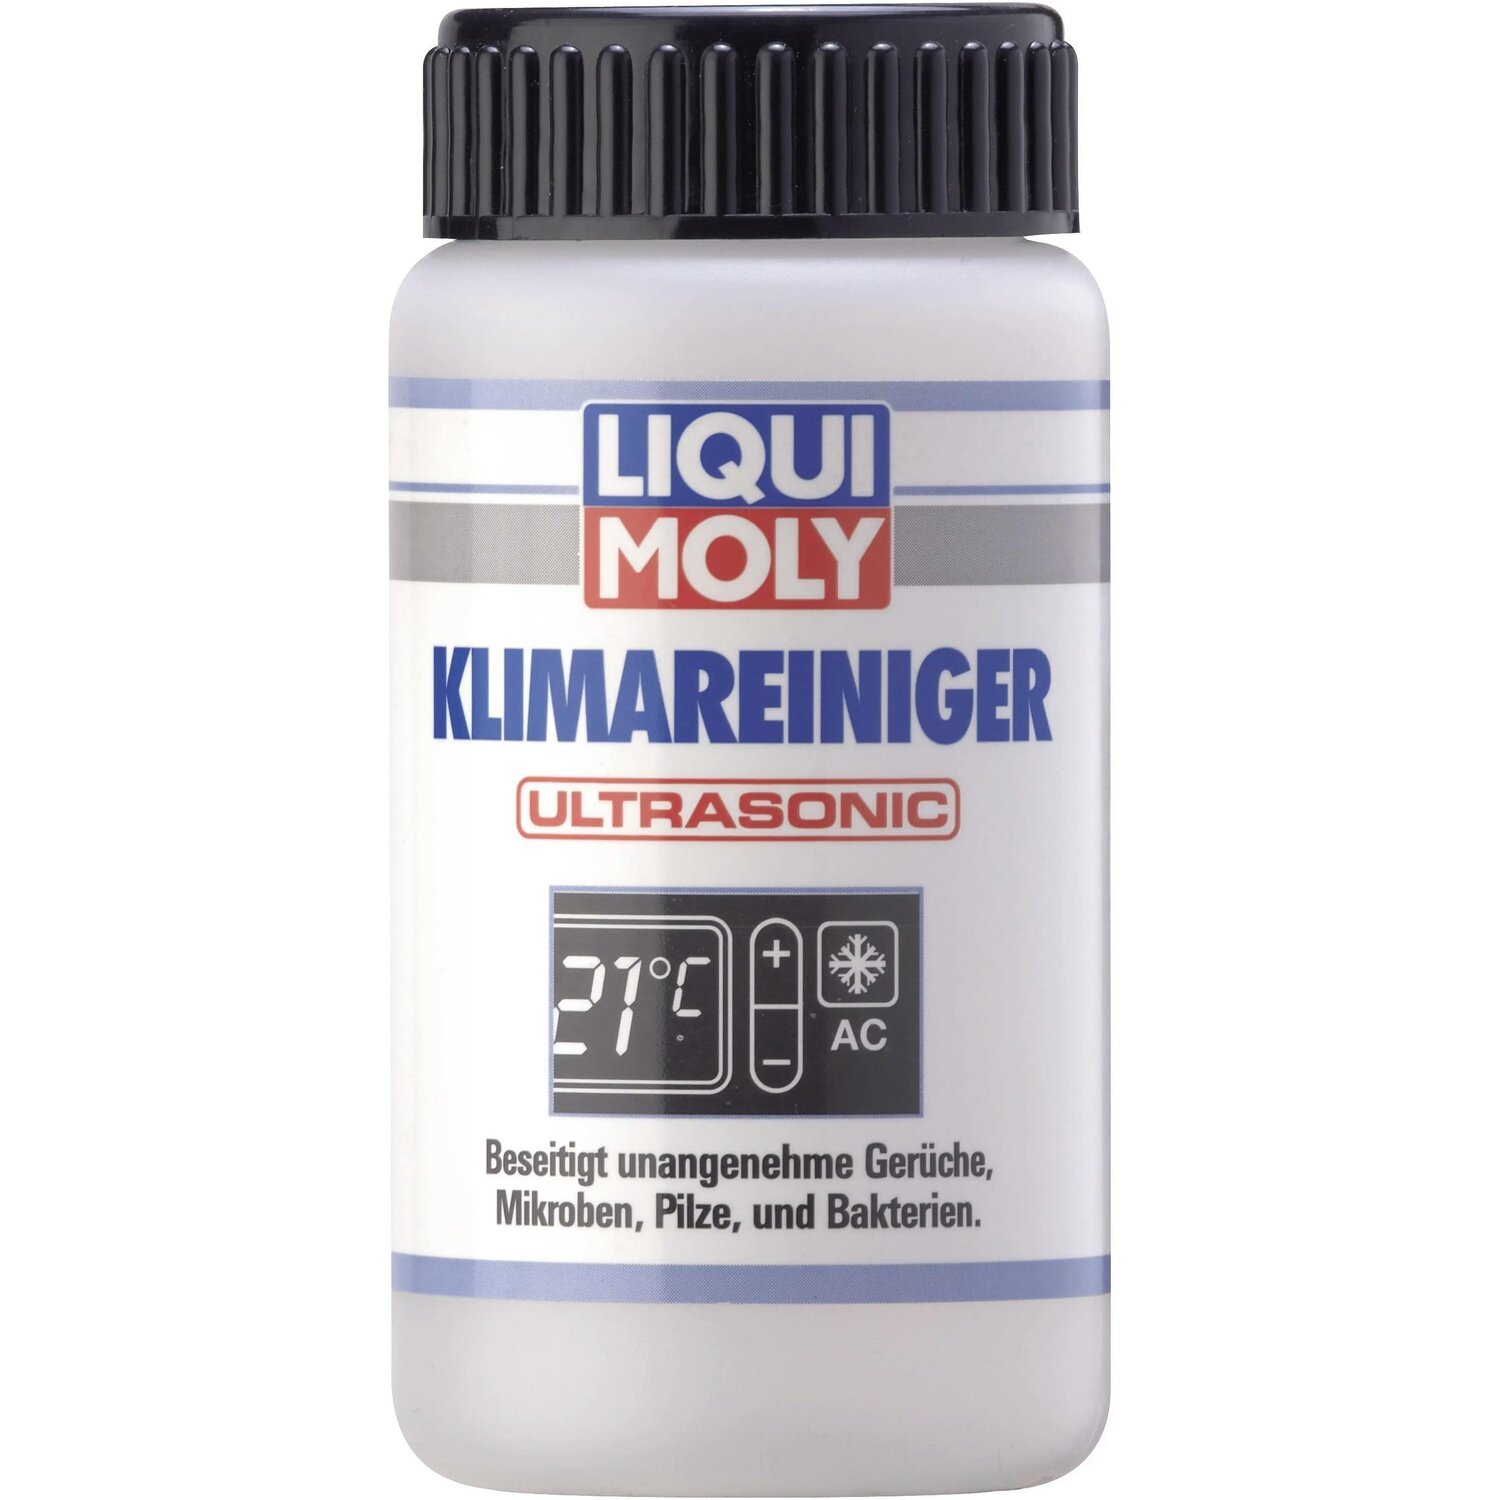 Очисник Liqui Moly для кондиціонера (для ультразвукових установок) Klimareiniger Ultrasonic 0,1л (4100420040795)фото